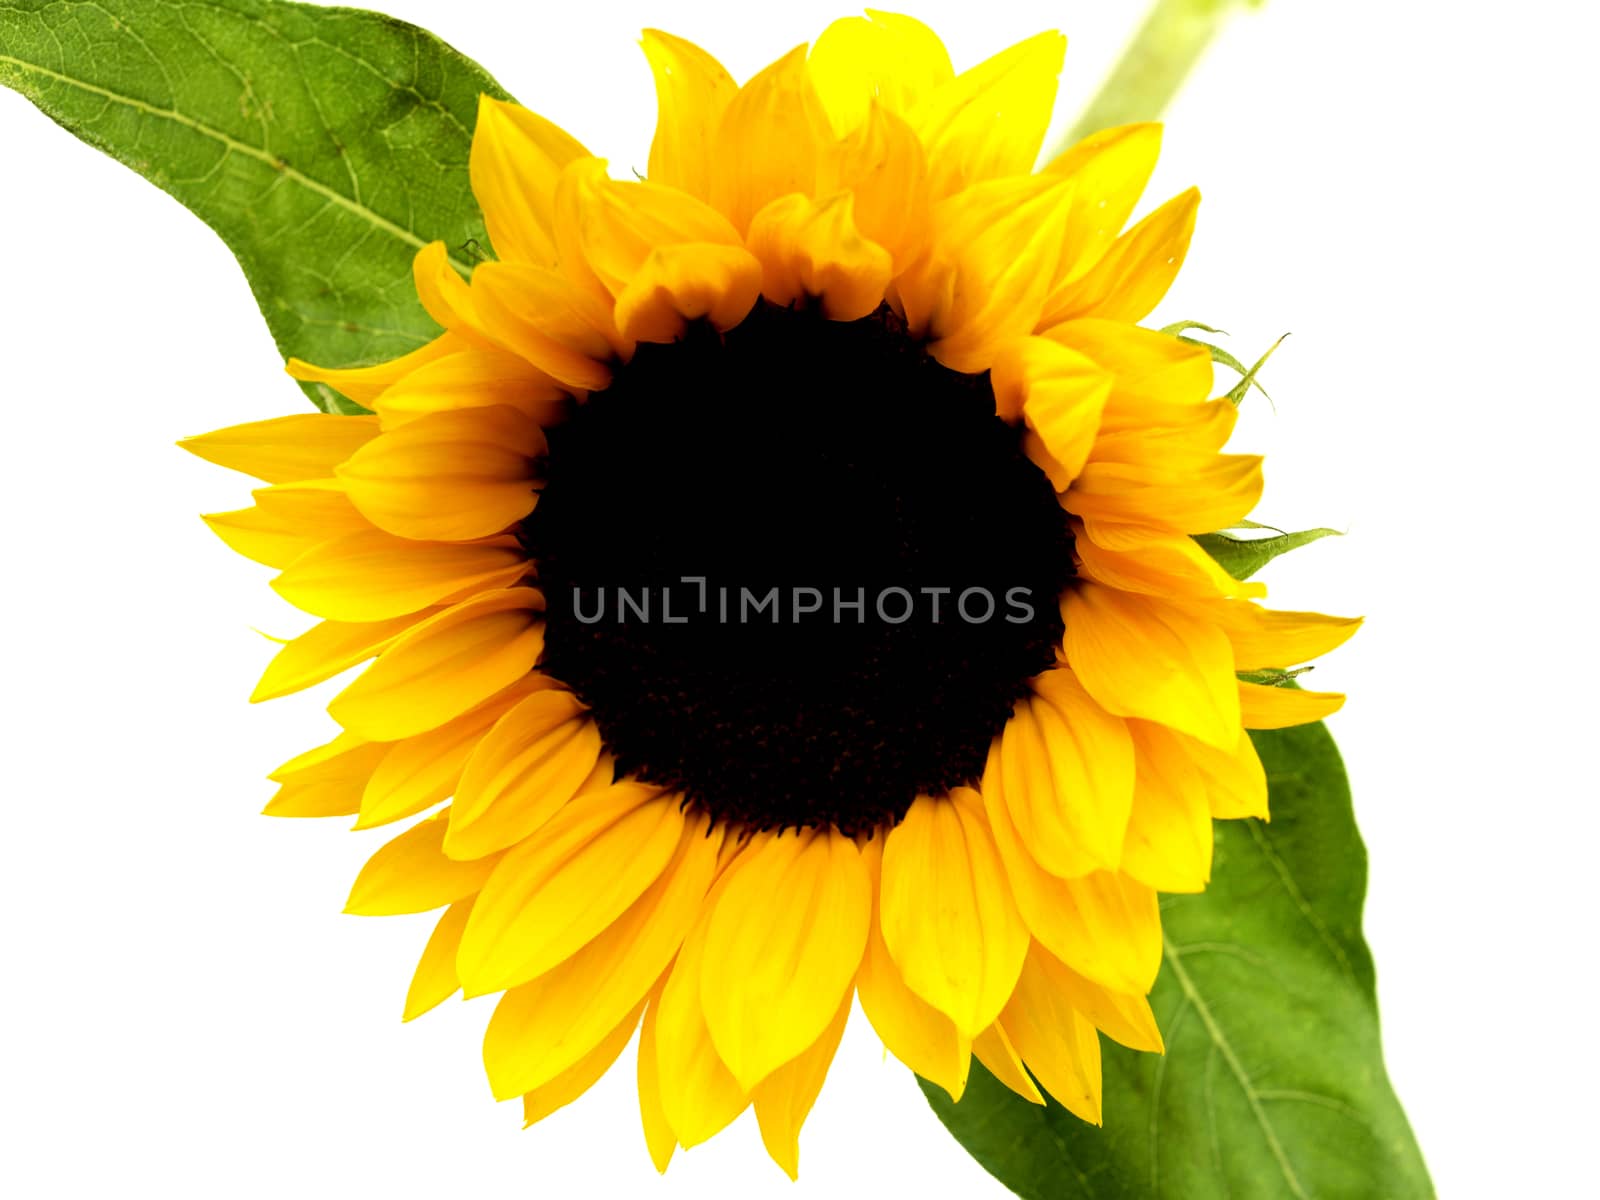 Sunflower by Whiteboxmedia